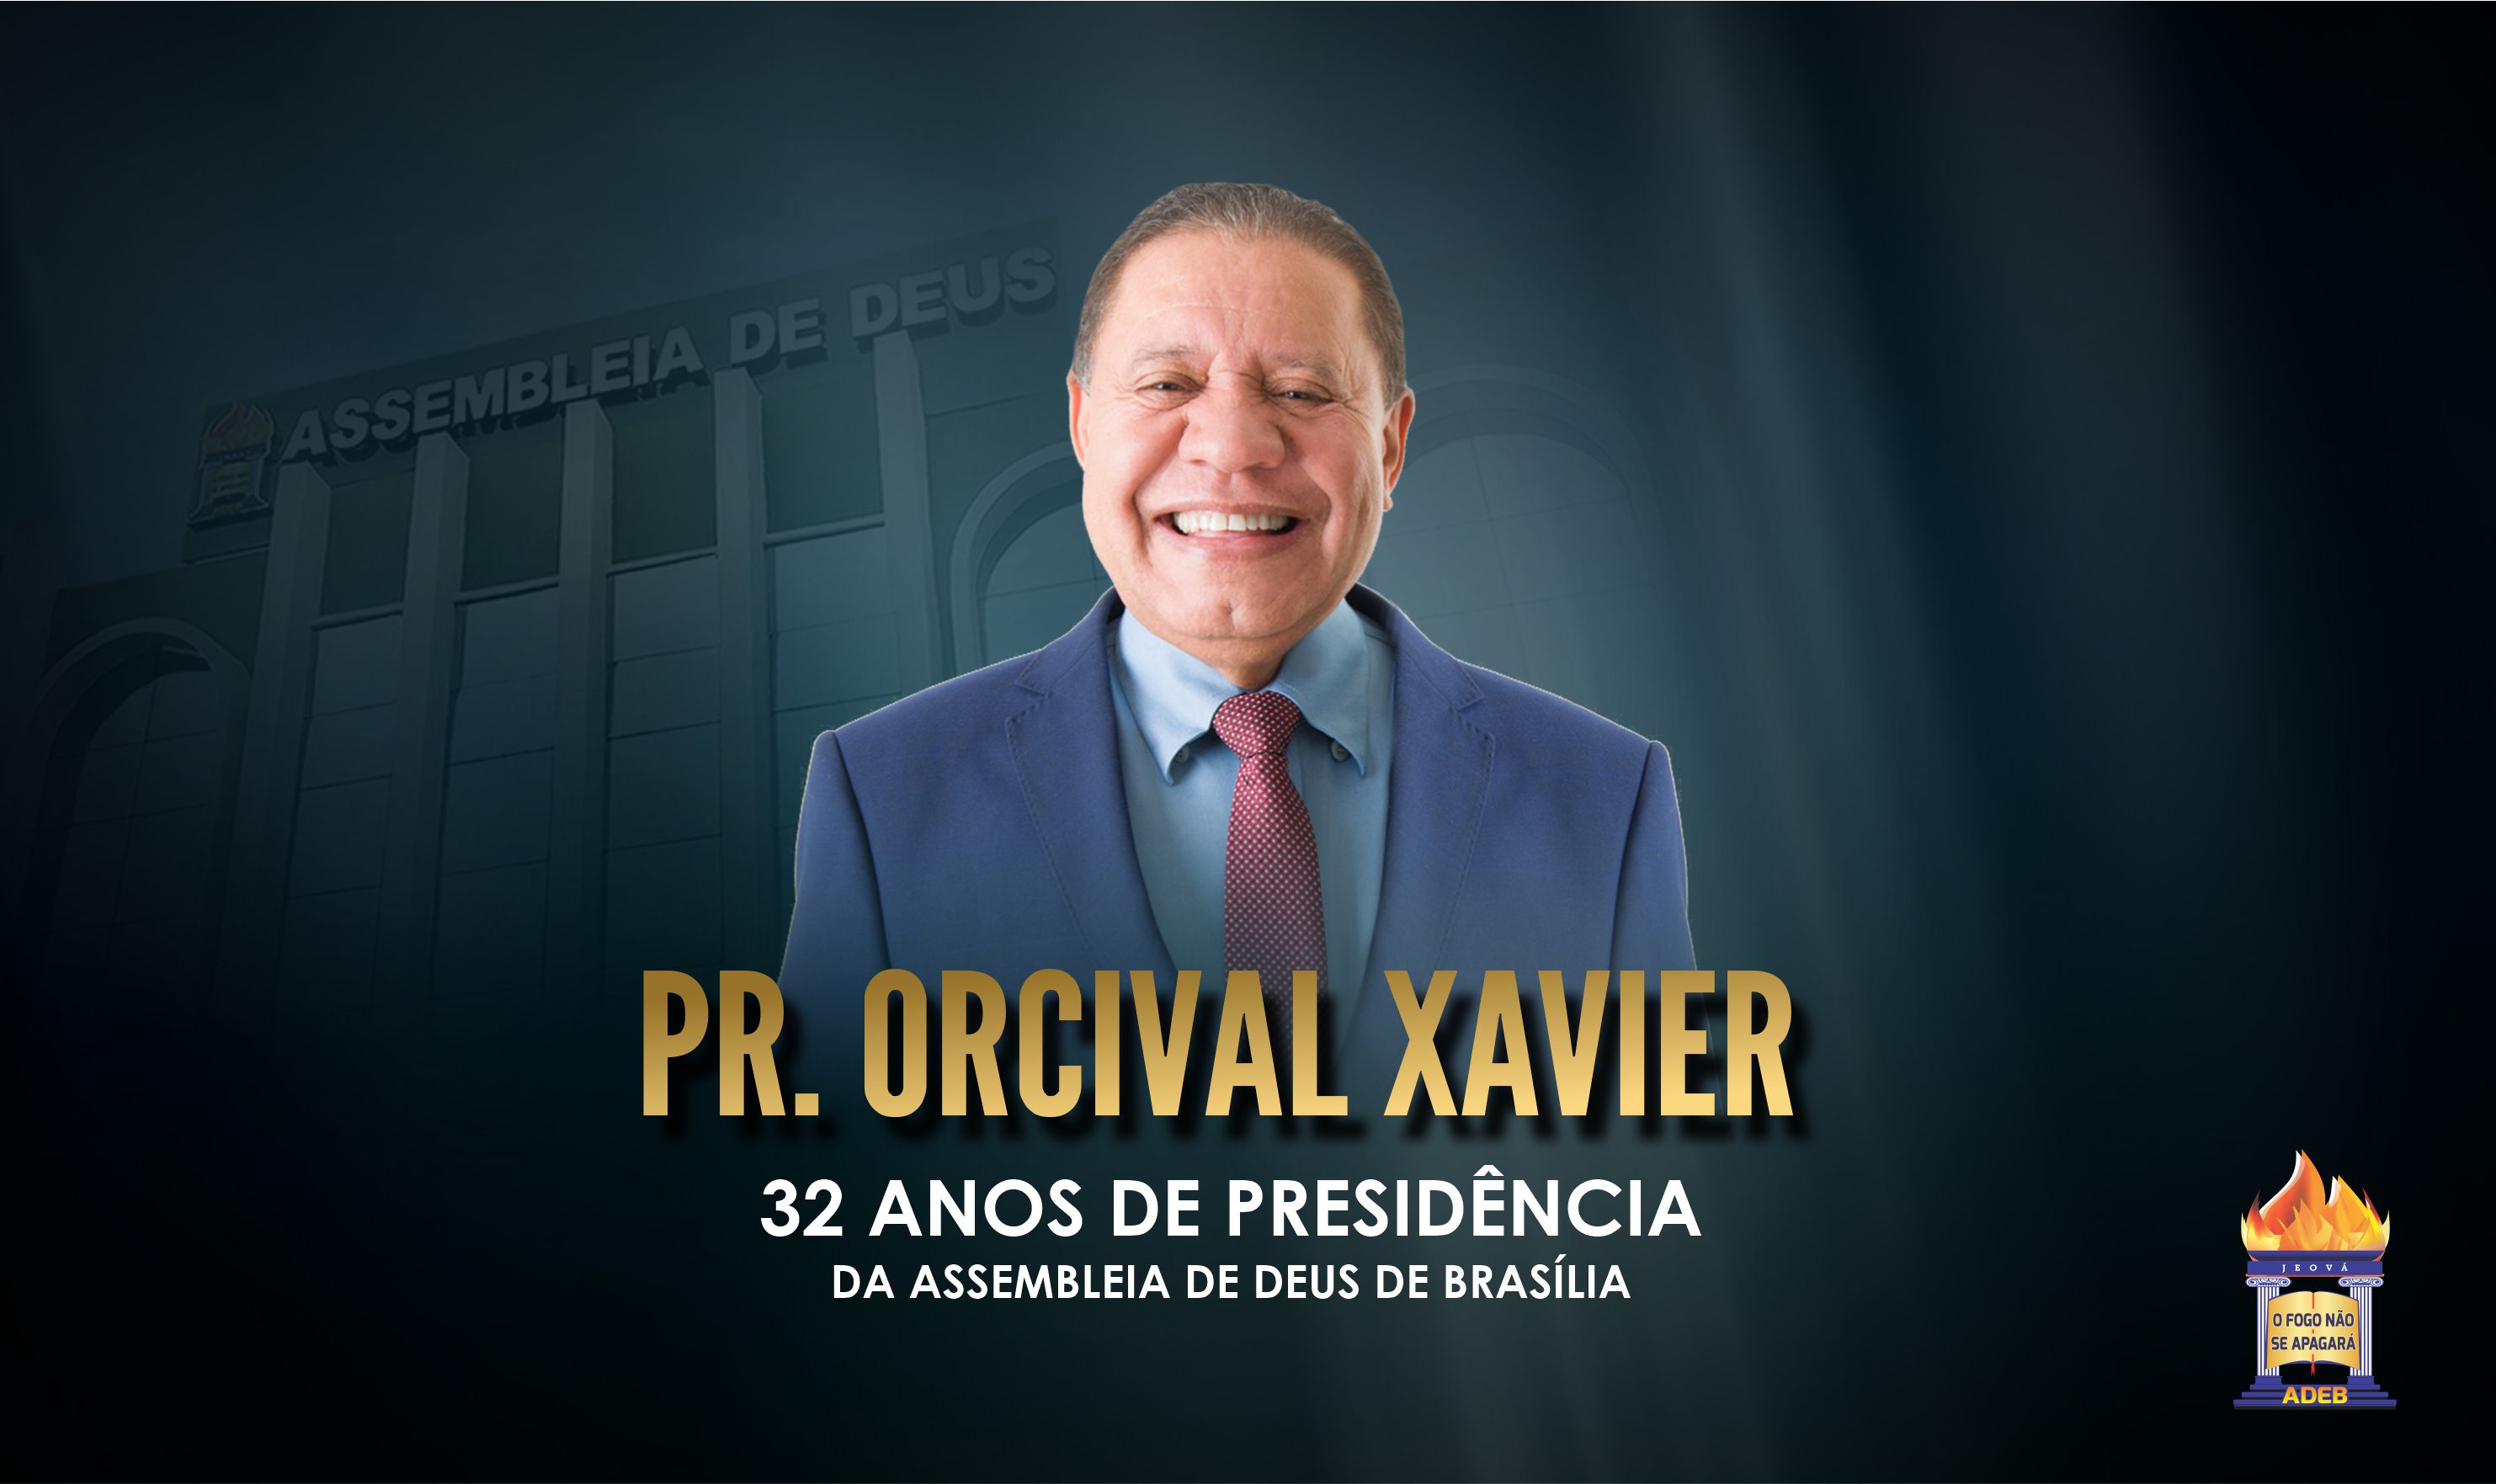 32 anos de presidência do Pr. Orcival Xavier 